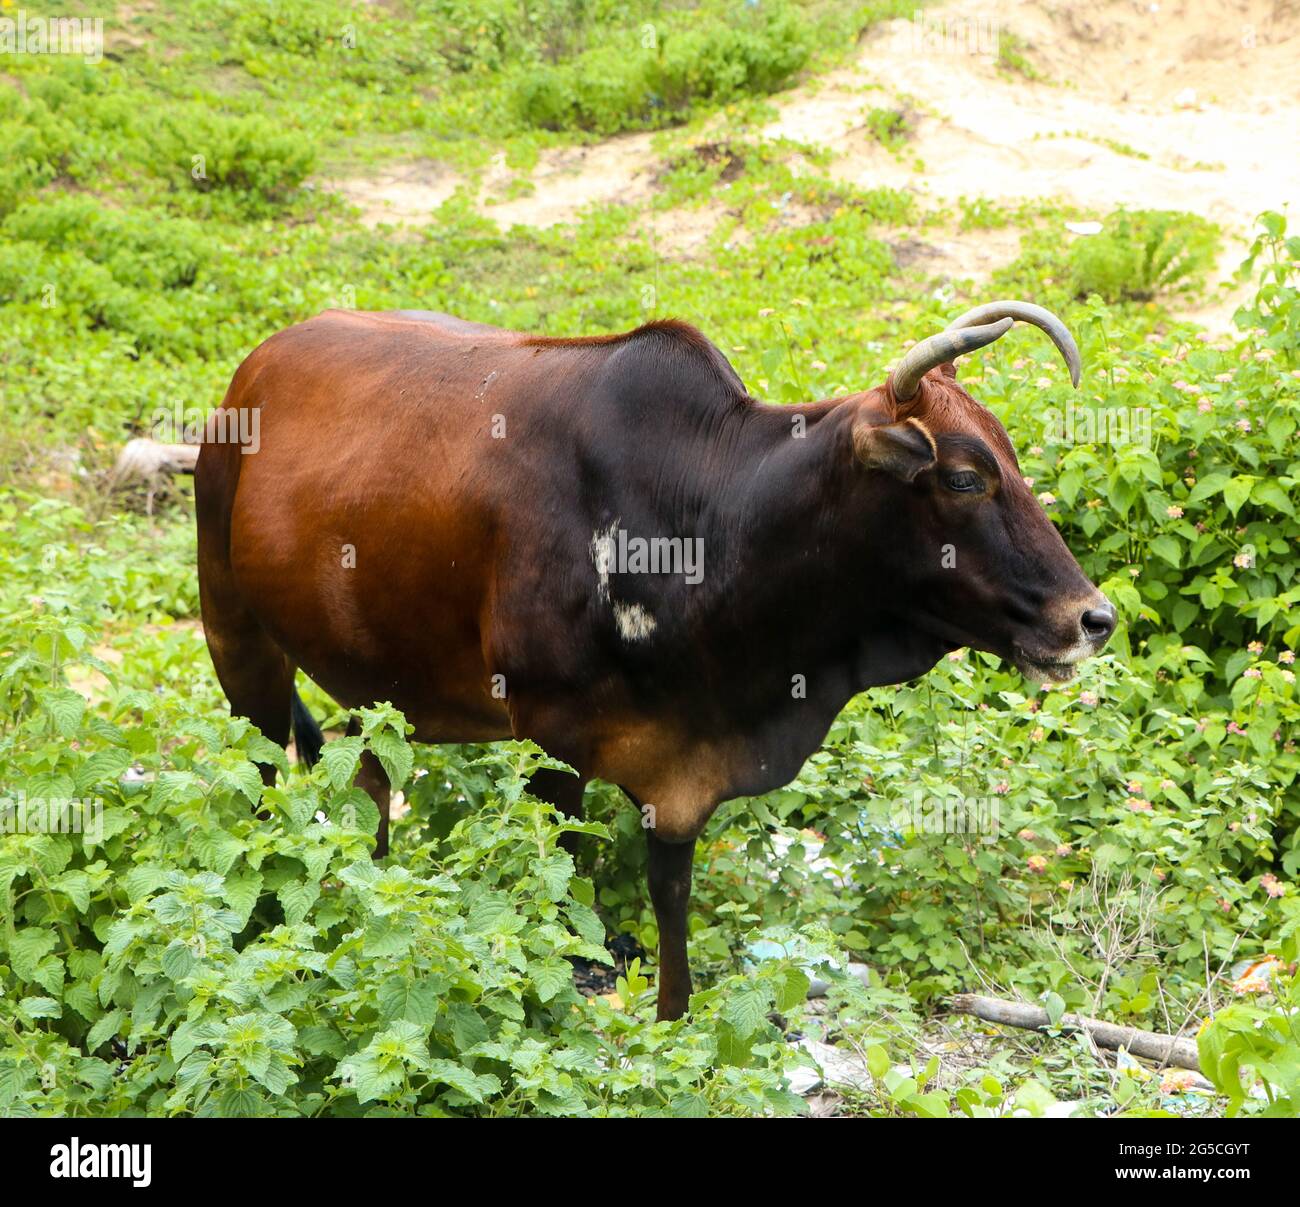 vache brun-noir foncé avec cornes courbées broutant dans le pré avec des feuilles et des plantes vertes Banque D'Images